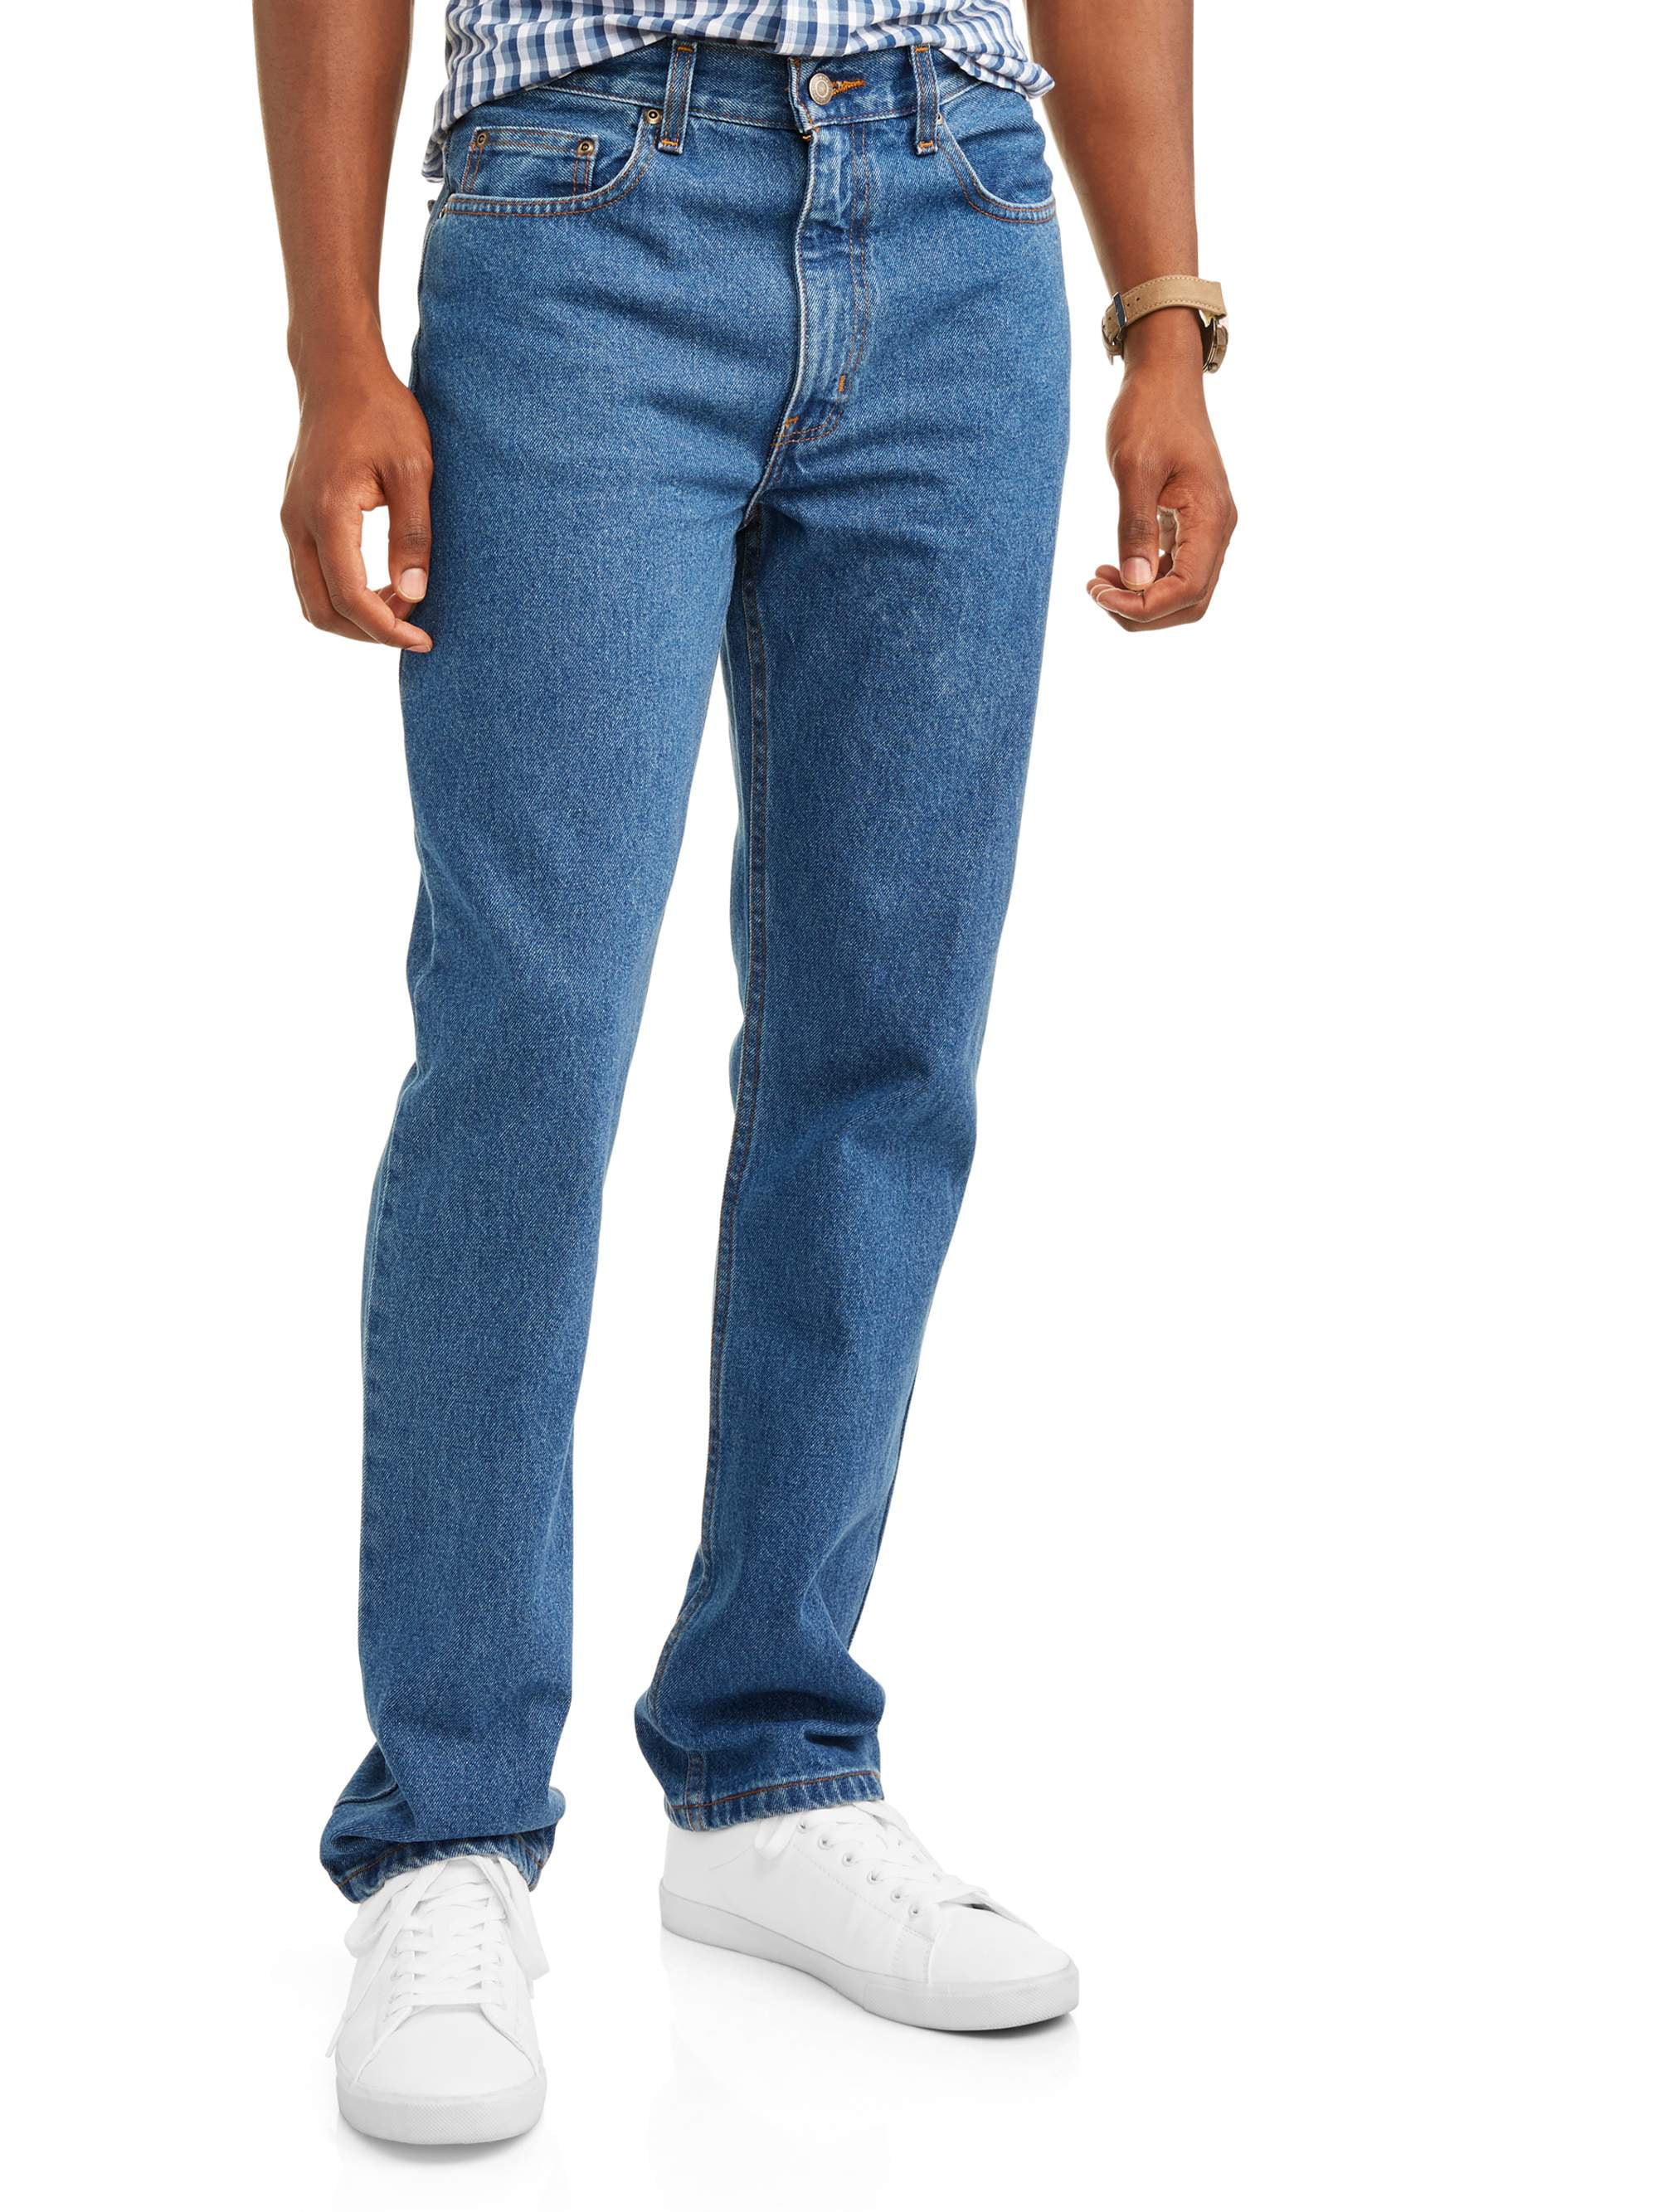 George Men's and Big Men's Jeans - Walmart.com